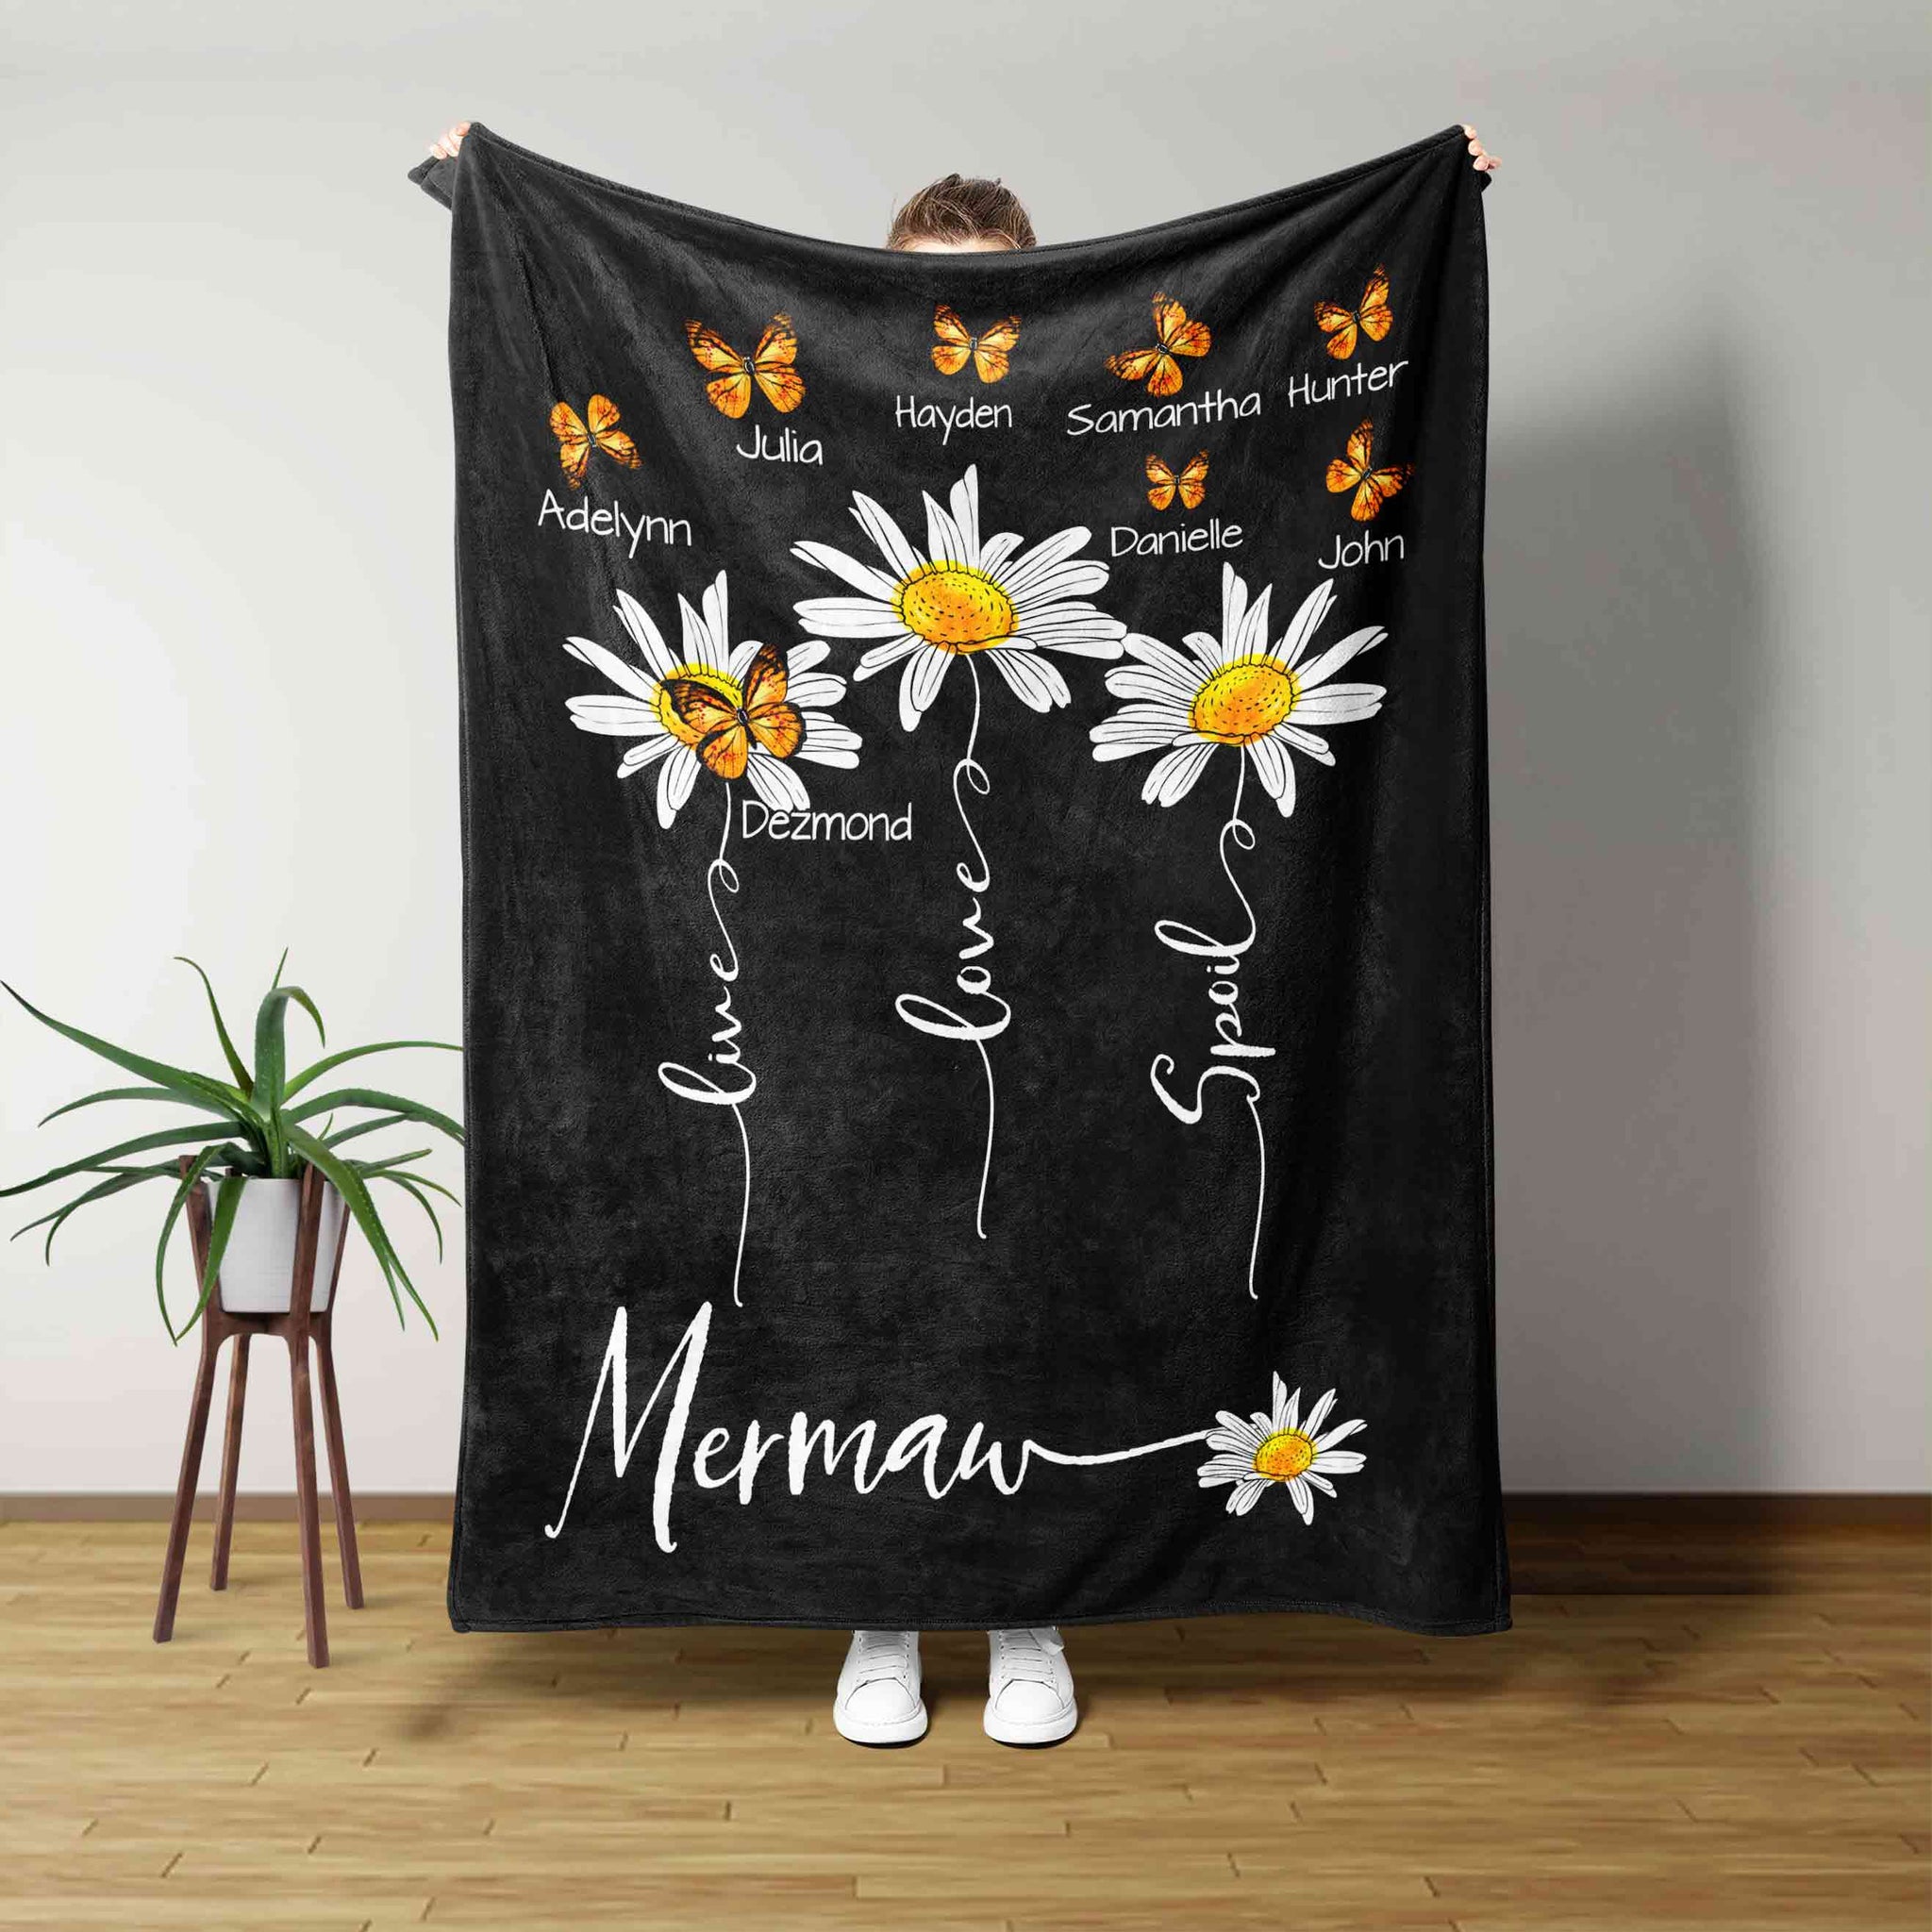 Mermaw Blanket, Daisy Flower Blanket, Butterfly Blanket, Family Blanket, Custom Name Blanket, Gift Blanket